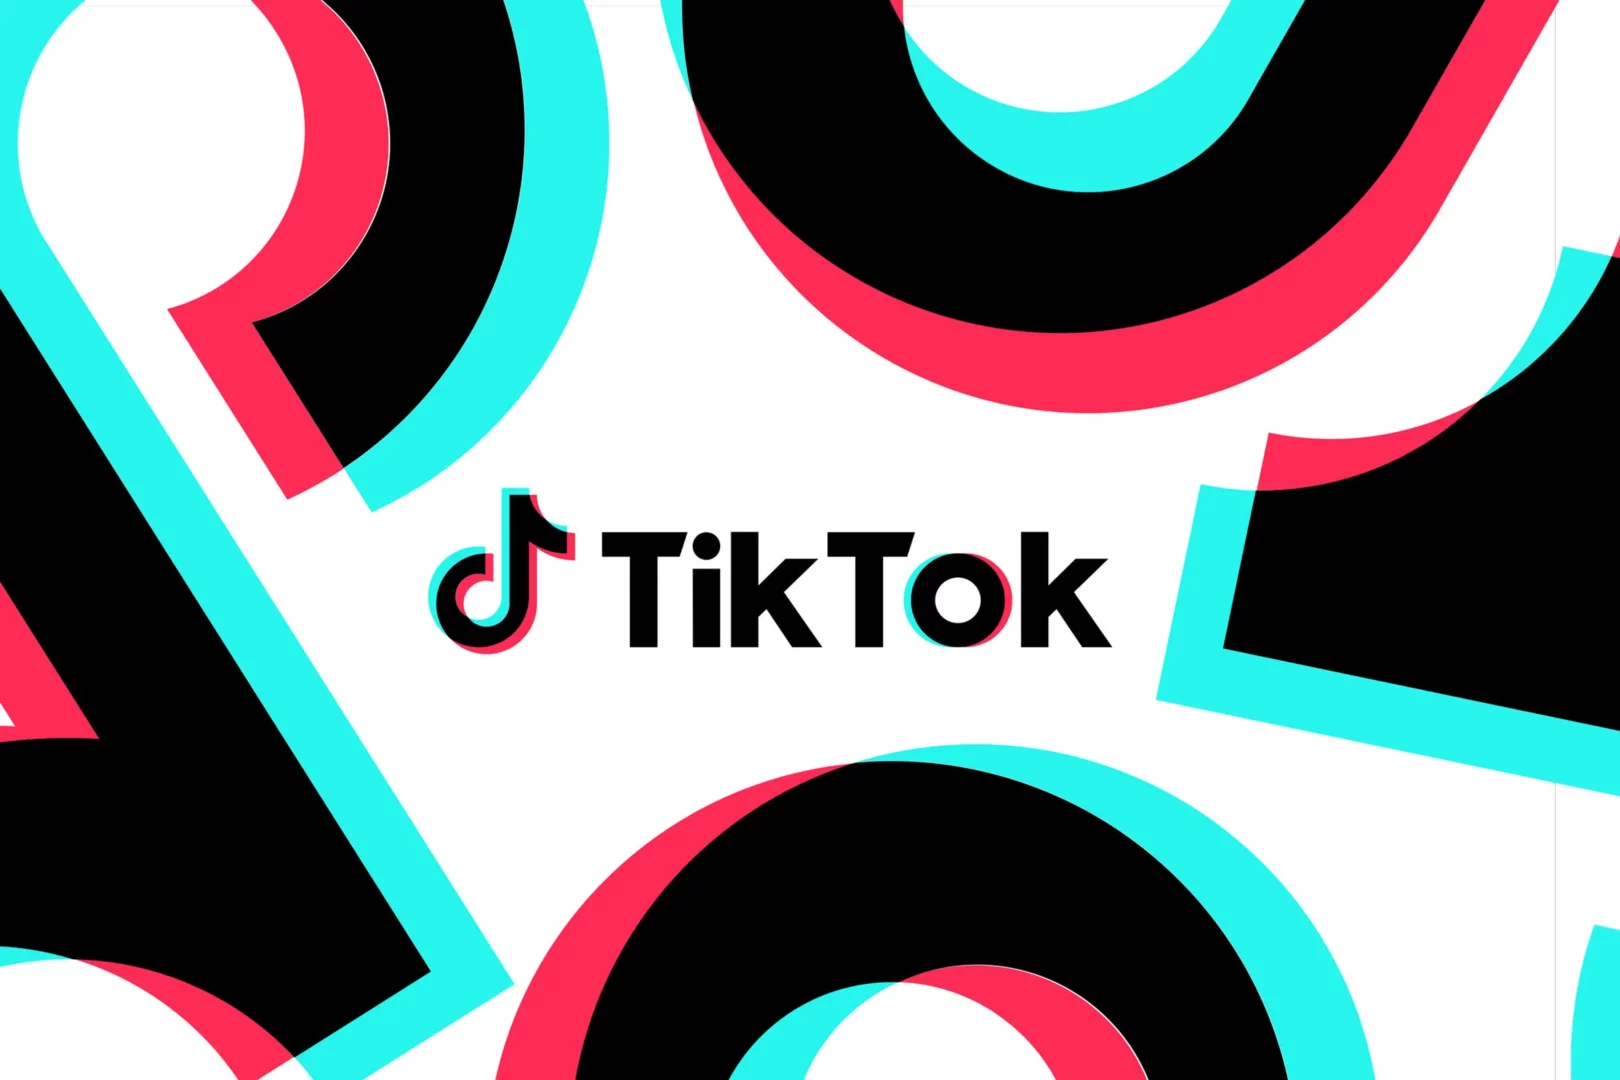 TikTok vrea să schimbe modul în care utilizatorii urmăresc videoclipurile